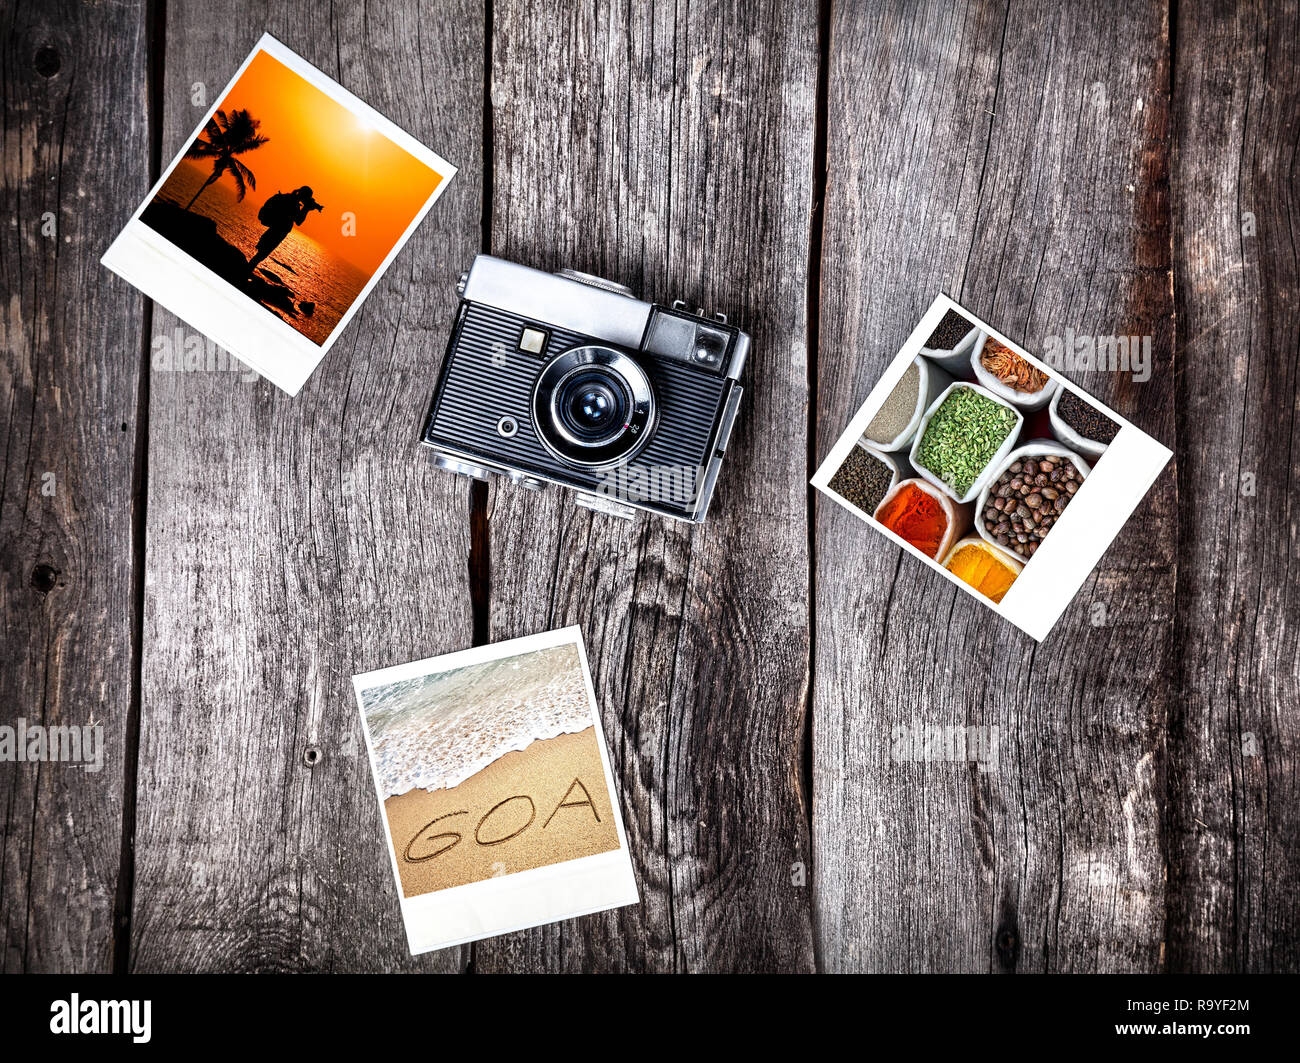 Vecchi Film Fotocamera e foto con Goa spiagge tropicali e spezie sullo sfondo di legno Foto Stock